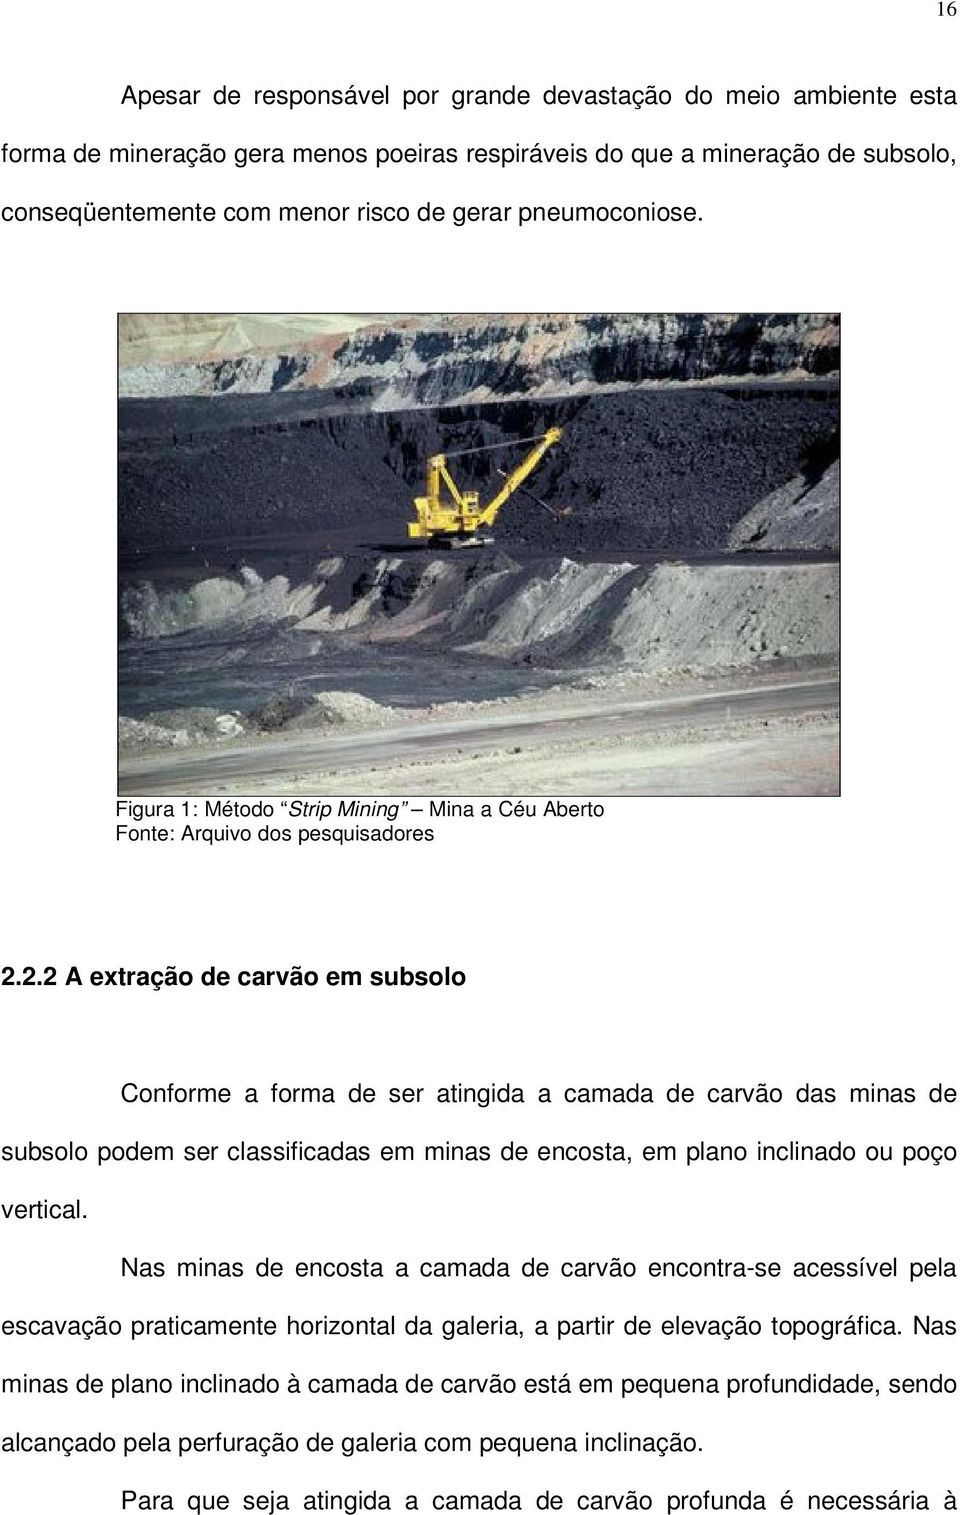 2.2 A extração de carvão em subsolo Conforme a forma de ser atingida a camada de carvão das minas de subsolo podem ser classificadas em minas de encosta, em plano inclinado ou poço vertical.